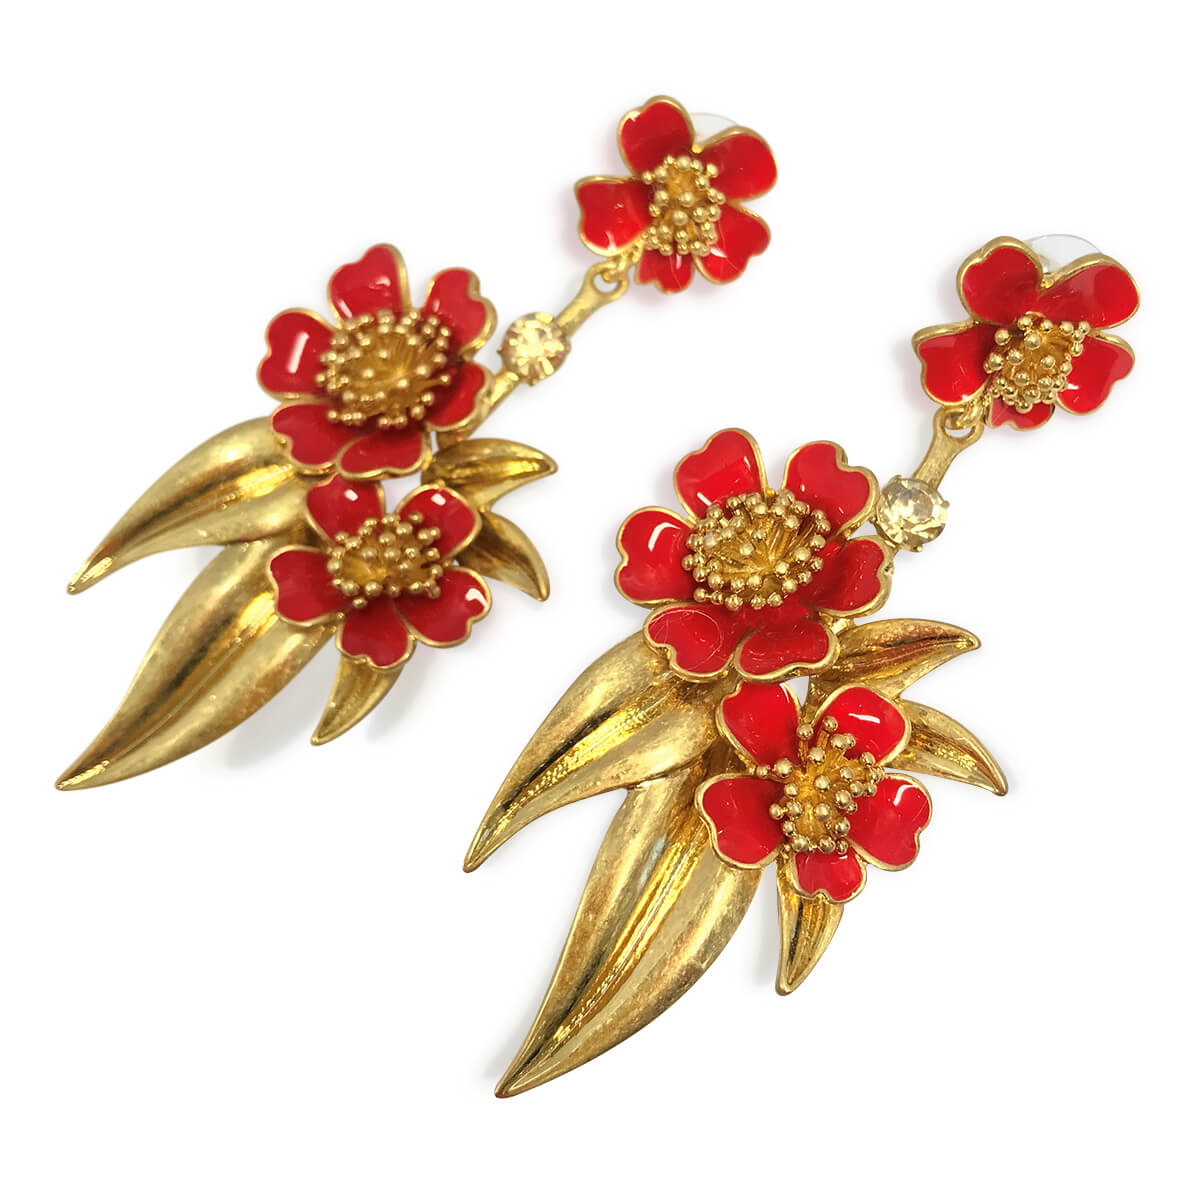 Red floral pierced earrings by Oscar de la Renta